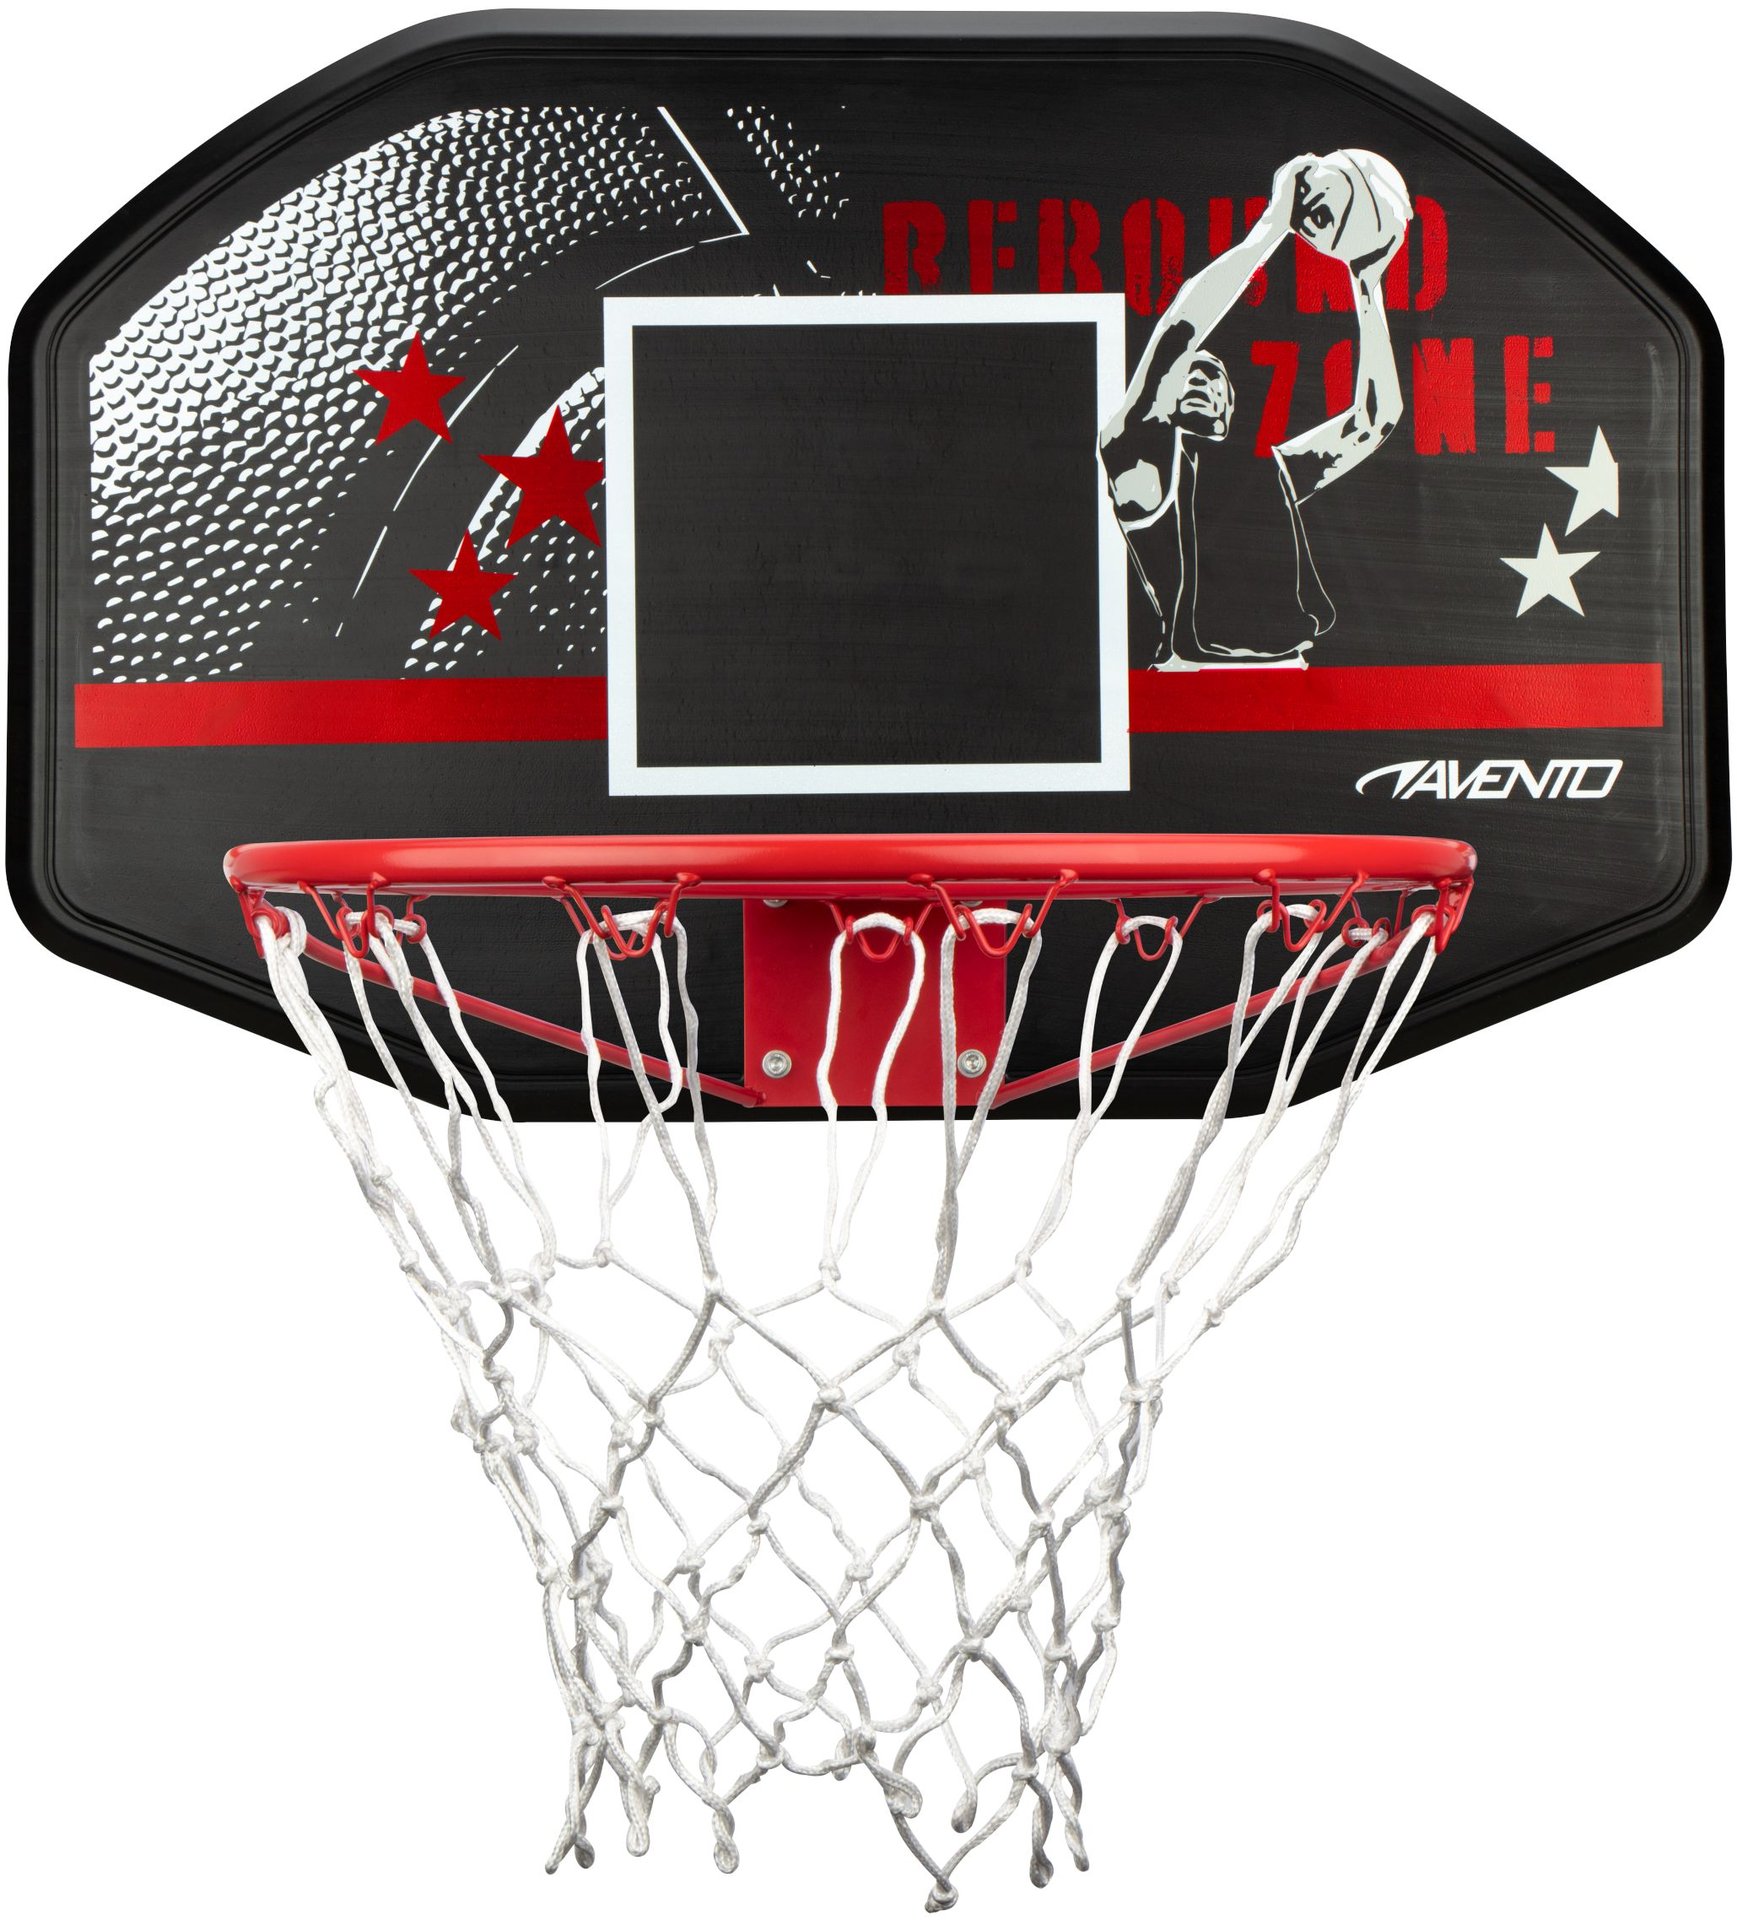 Basketbalbord + Ring + Net • Rebound Zone •